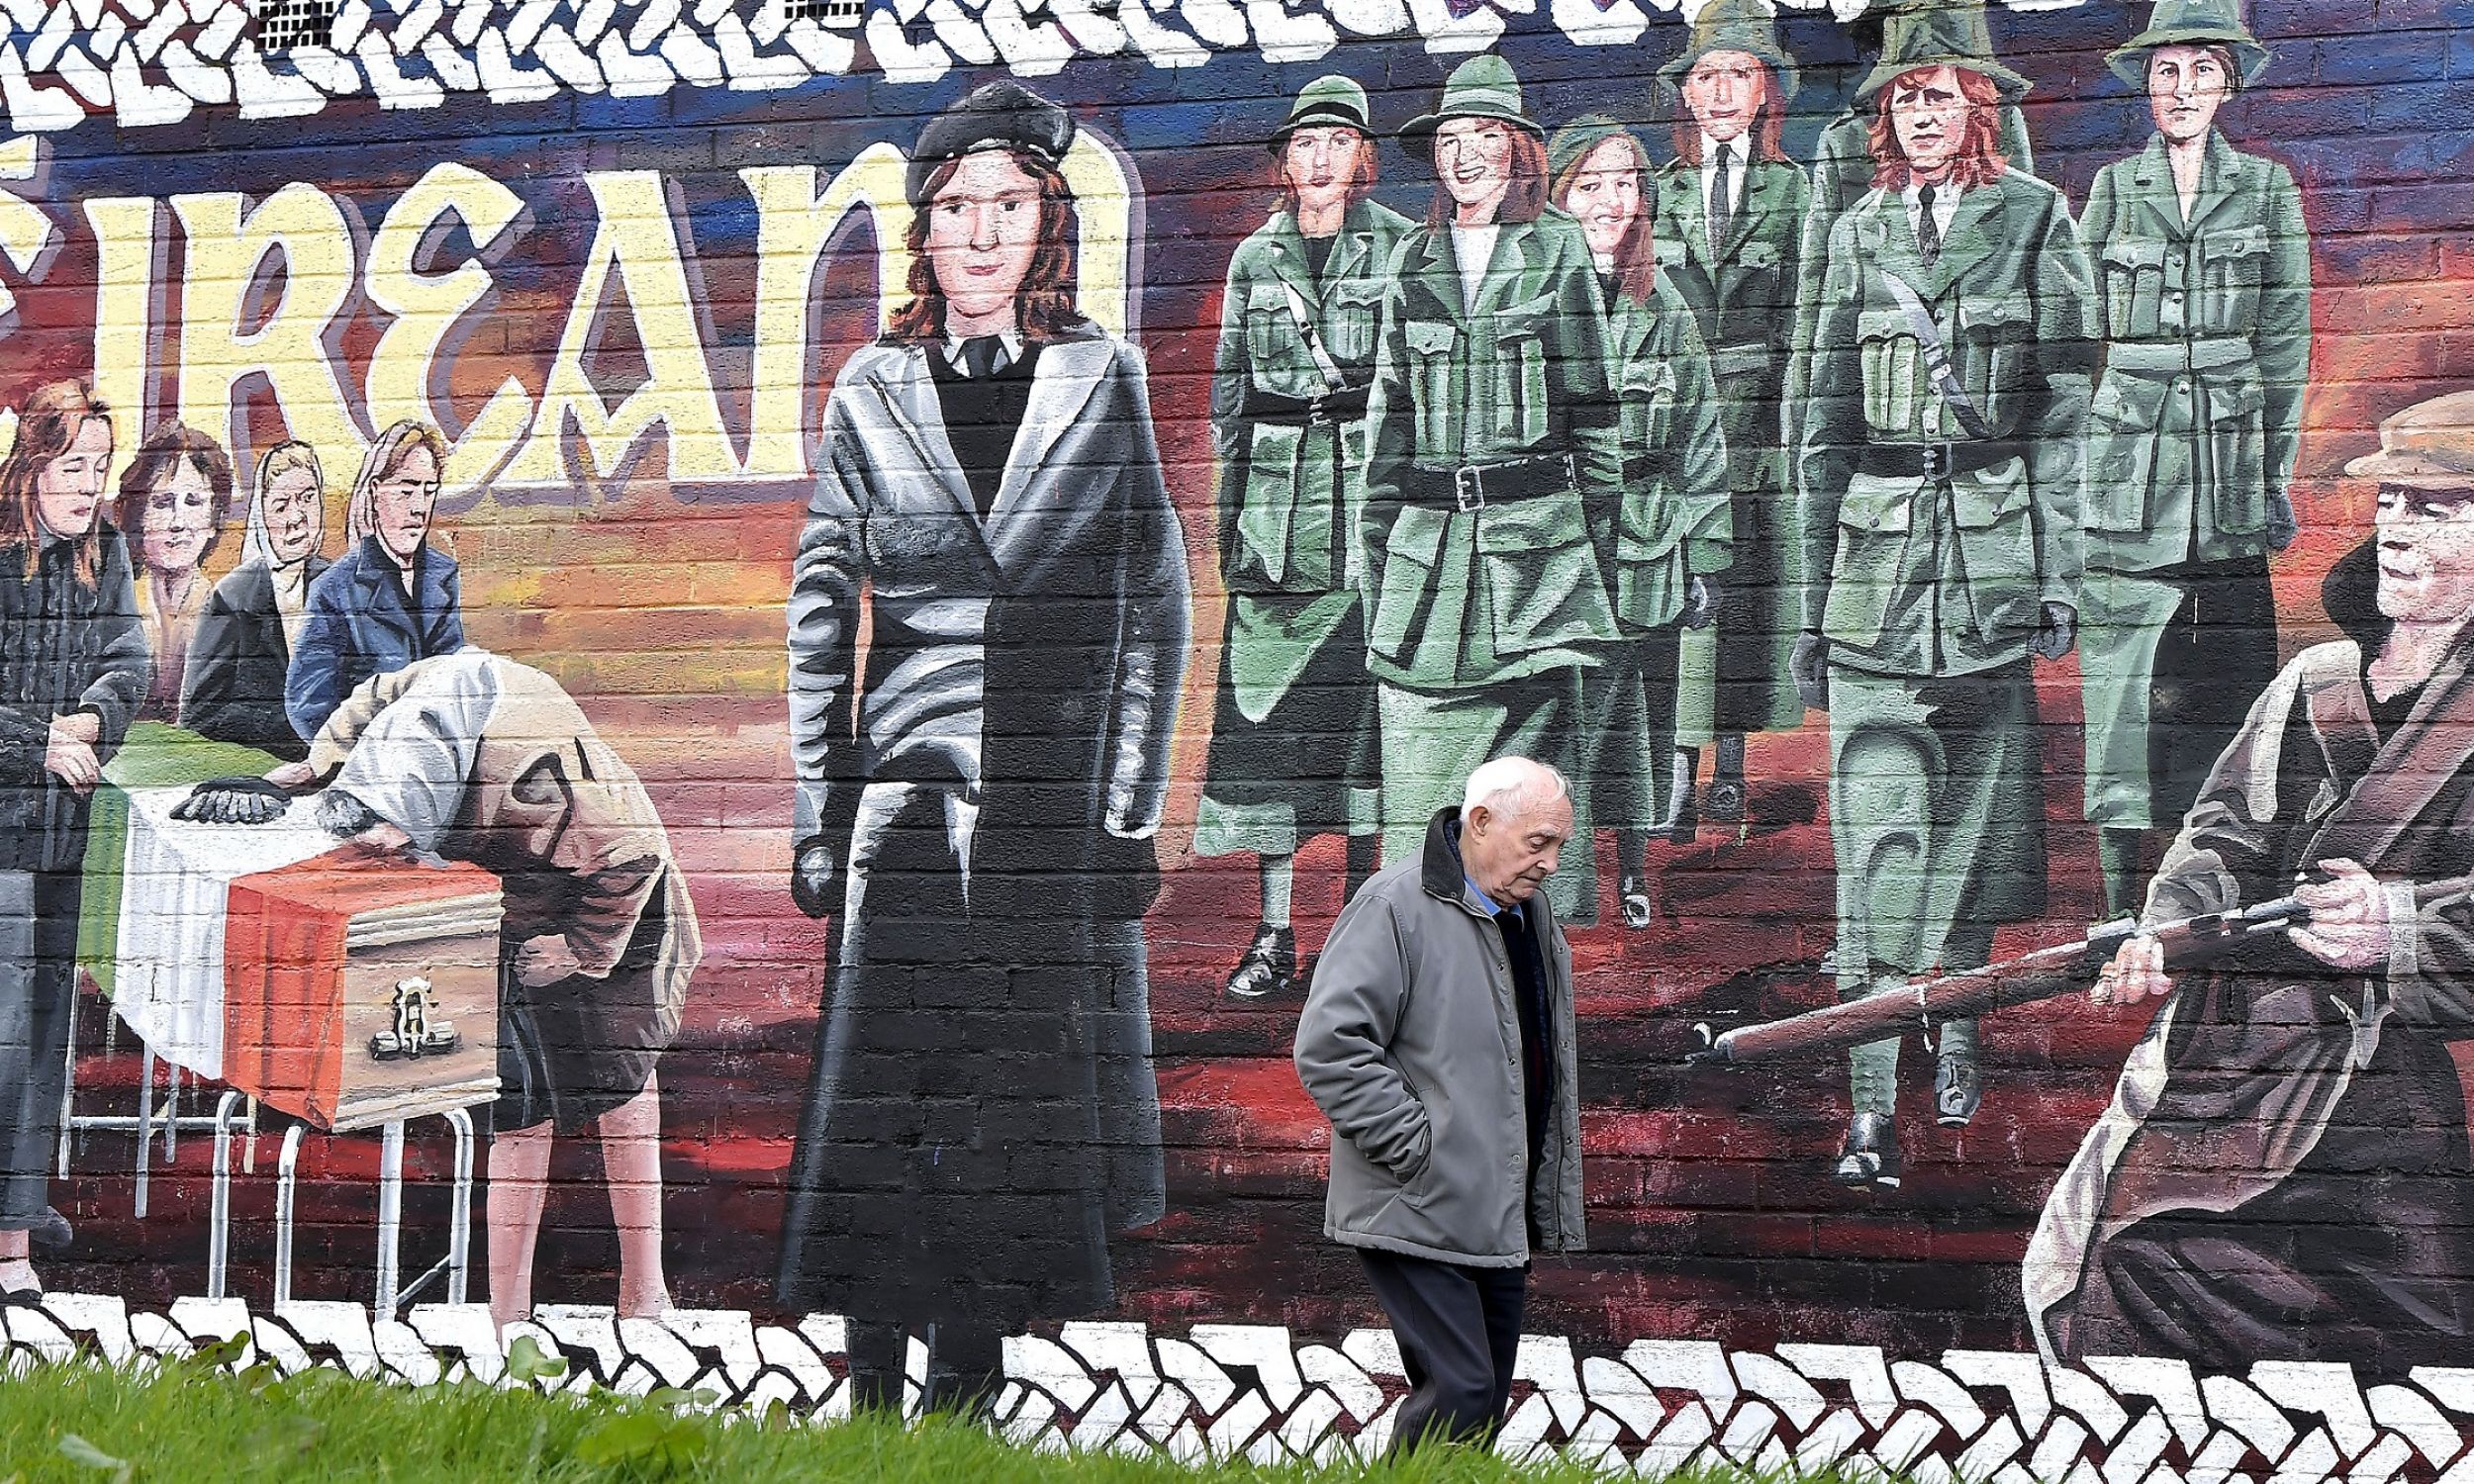 Mural w Londonderry, w Irlandii Północnej, w marcu 2017 r. koło domu zmarłego właśnie działacza Sinn Fein Martina McGuinnessa. W czasie „krwawej niedzieli” (30 stycznia 1972 r. żołnierze brytyjscy zabili 14 uczestników pokojowego marszu) był zastępcą dowódcy lokalnych struktur IRA. W latach 70. więziony. W latach 90. główny negocjator Sinn Féin pokojowego porozumienia wielkopiątkowego. Od 2007 r. był zastępcą pierwszego ministra Irlandii Północnej. Fot. Charles McQuillan/Getty Images